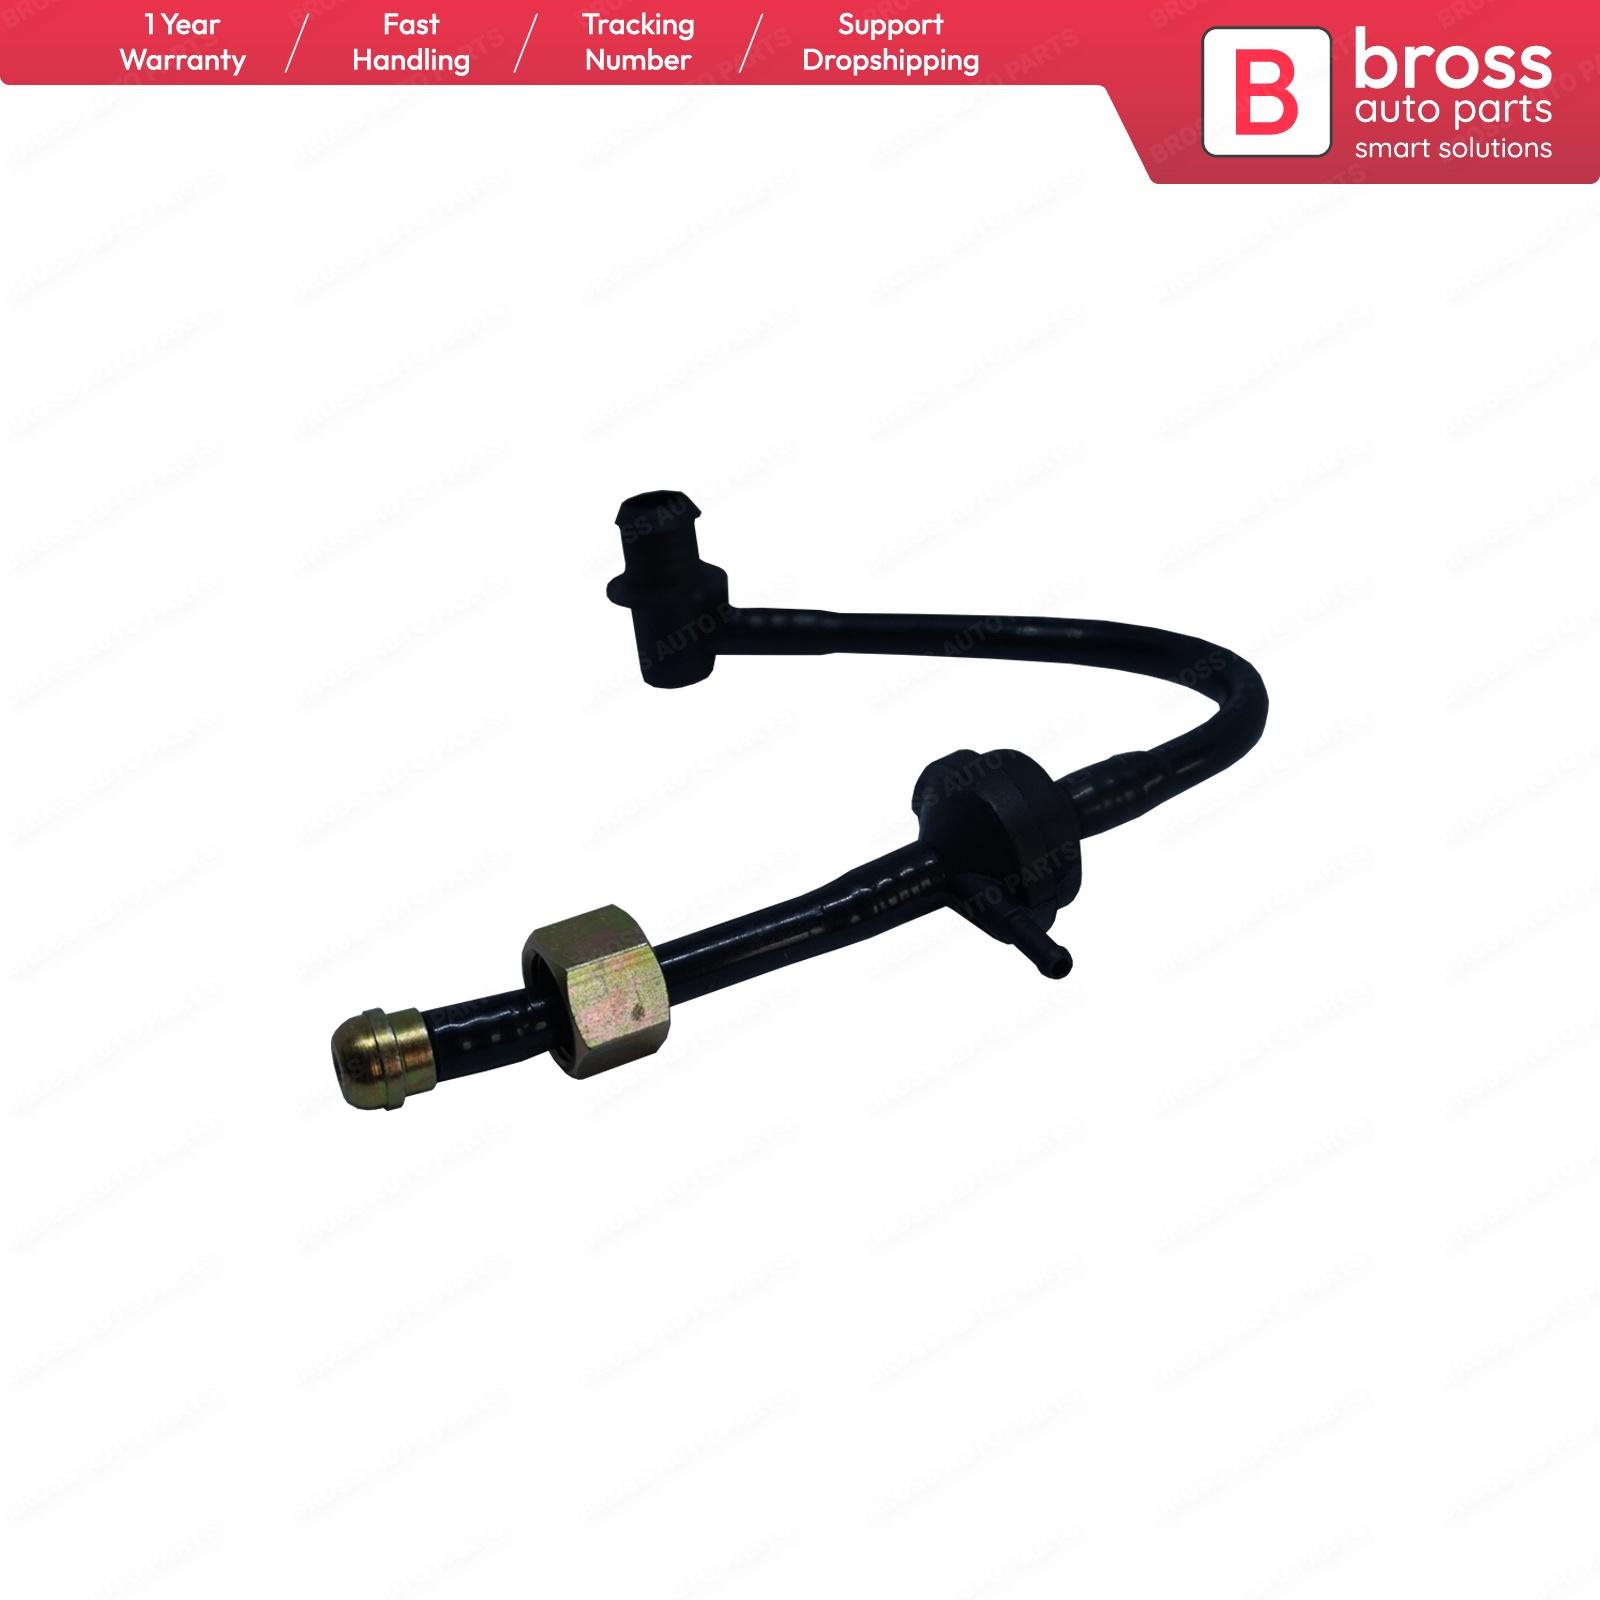 Изображение товара: Bross BHC645 усилитель тормозов вакуумный шланг обратный клапан без возврата 564611 90498464 для Opel Astra G Vectra B X1.6XEV Длина: 28 см